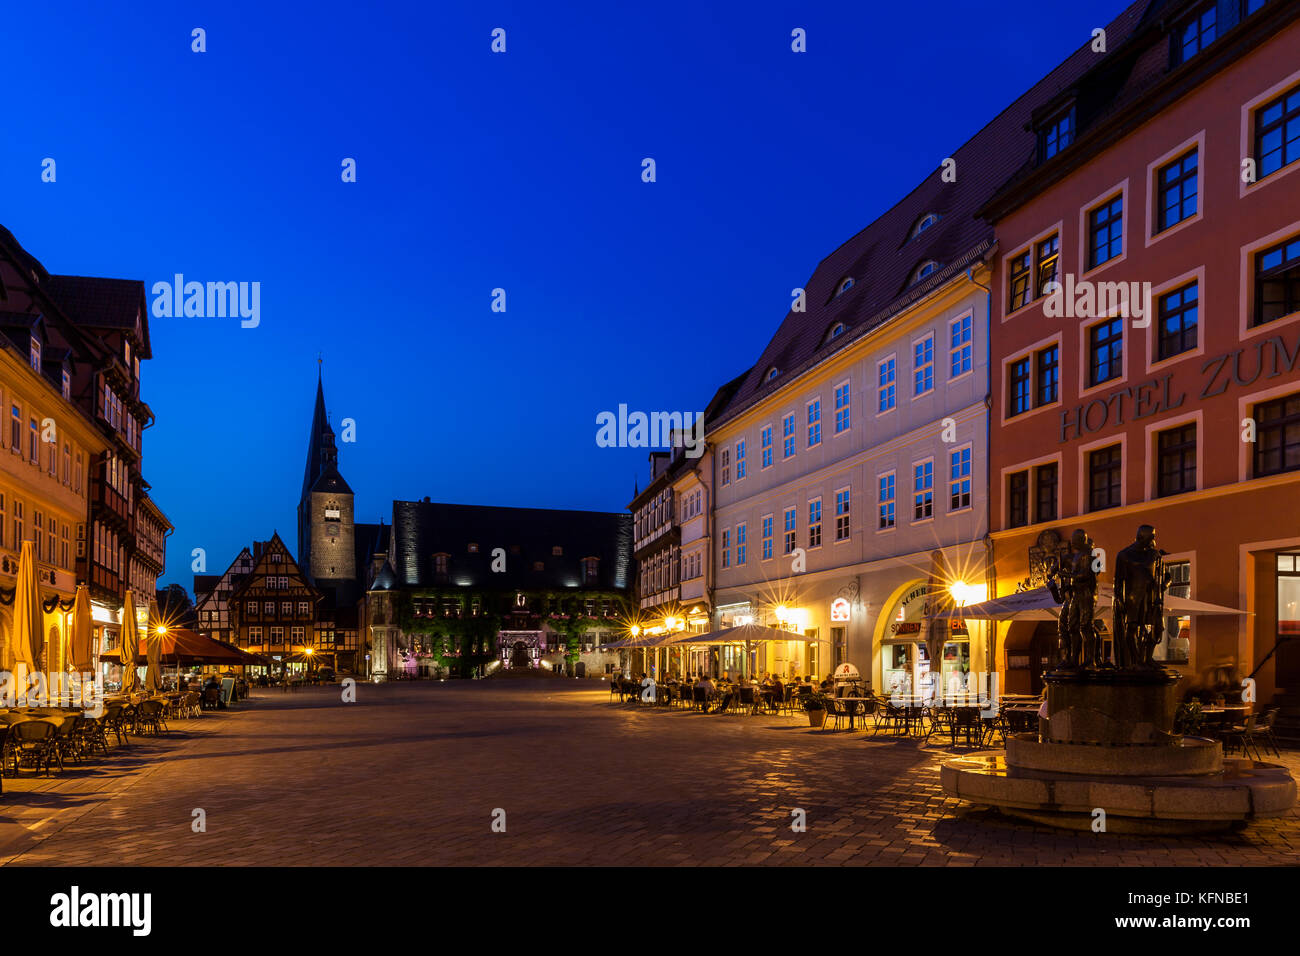 Welterbestadt Quedlinburg historischer Marktplatz bei Nacht Stock Photo